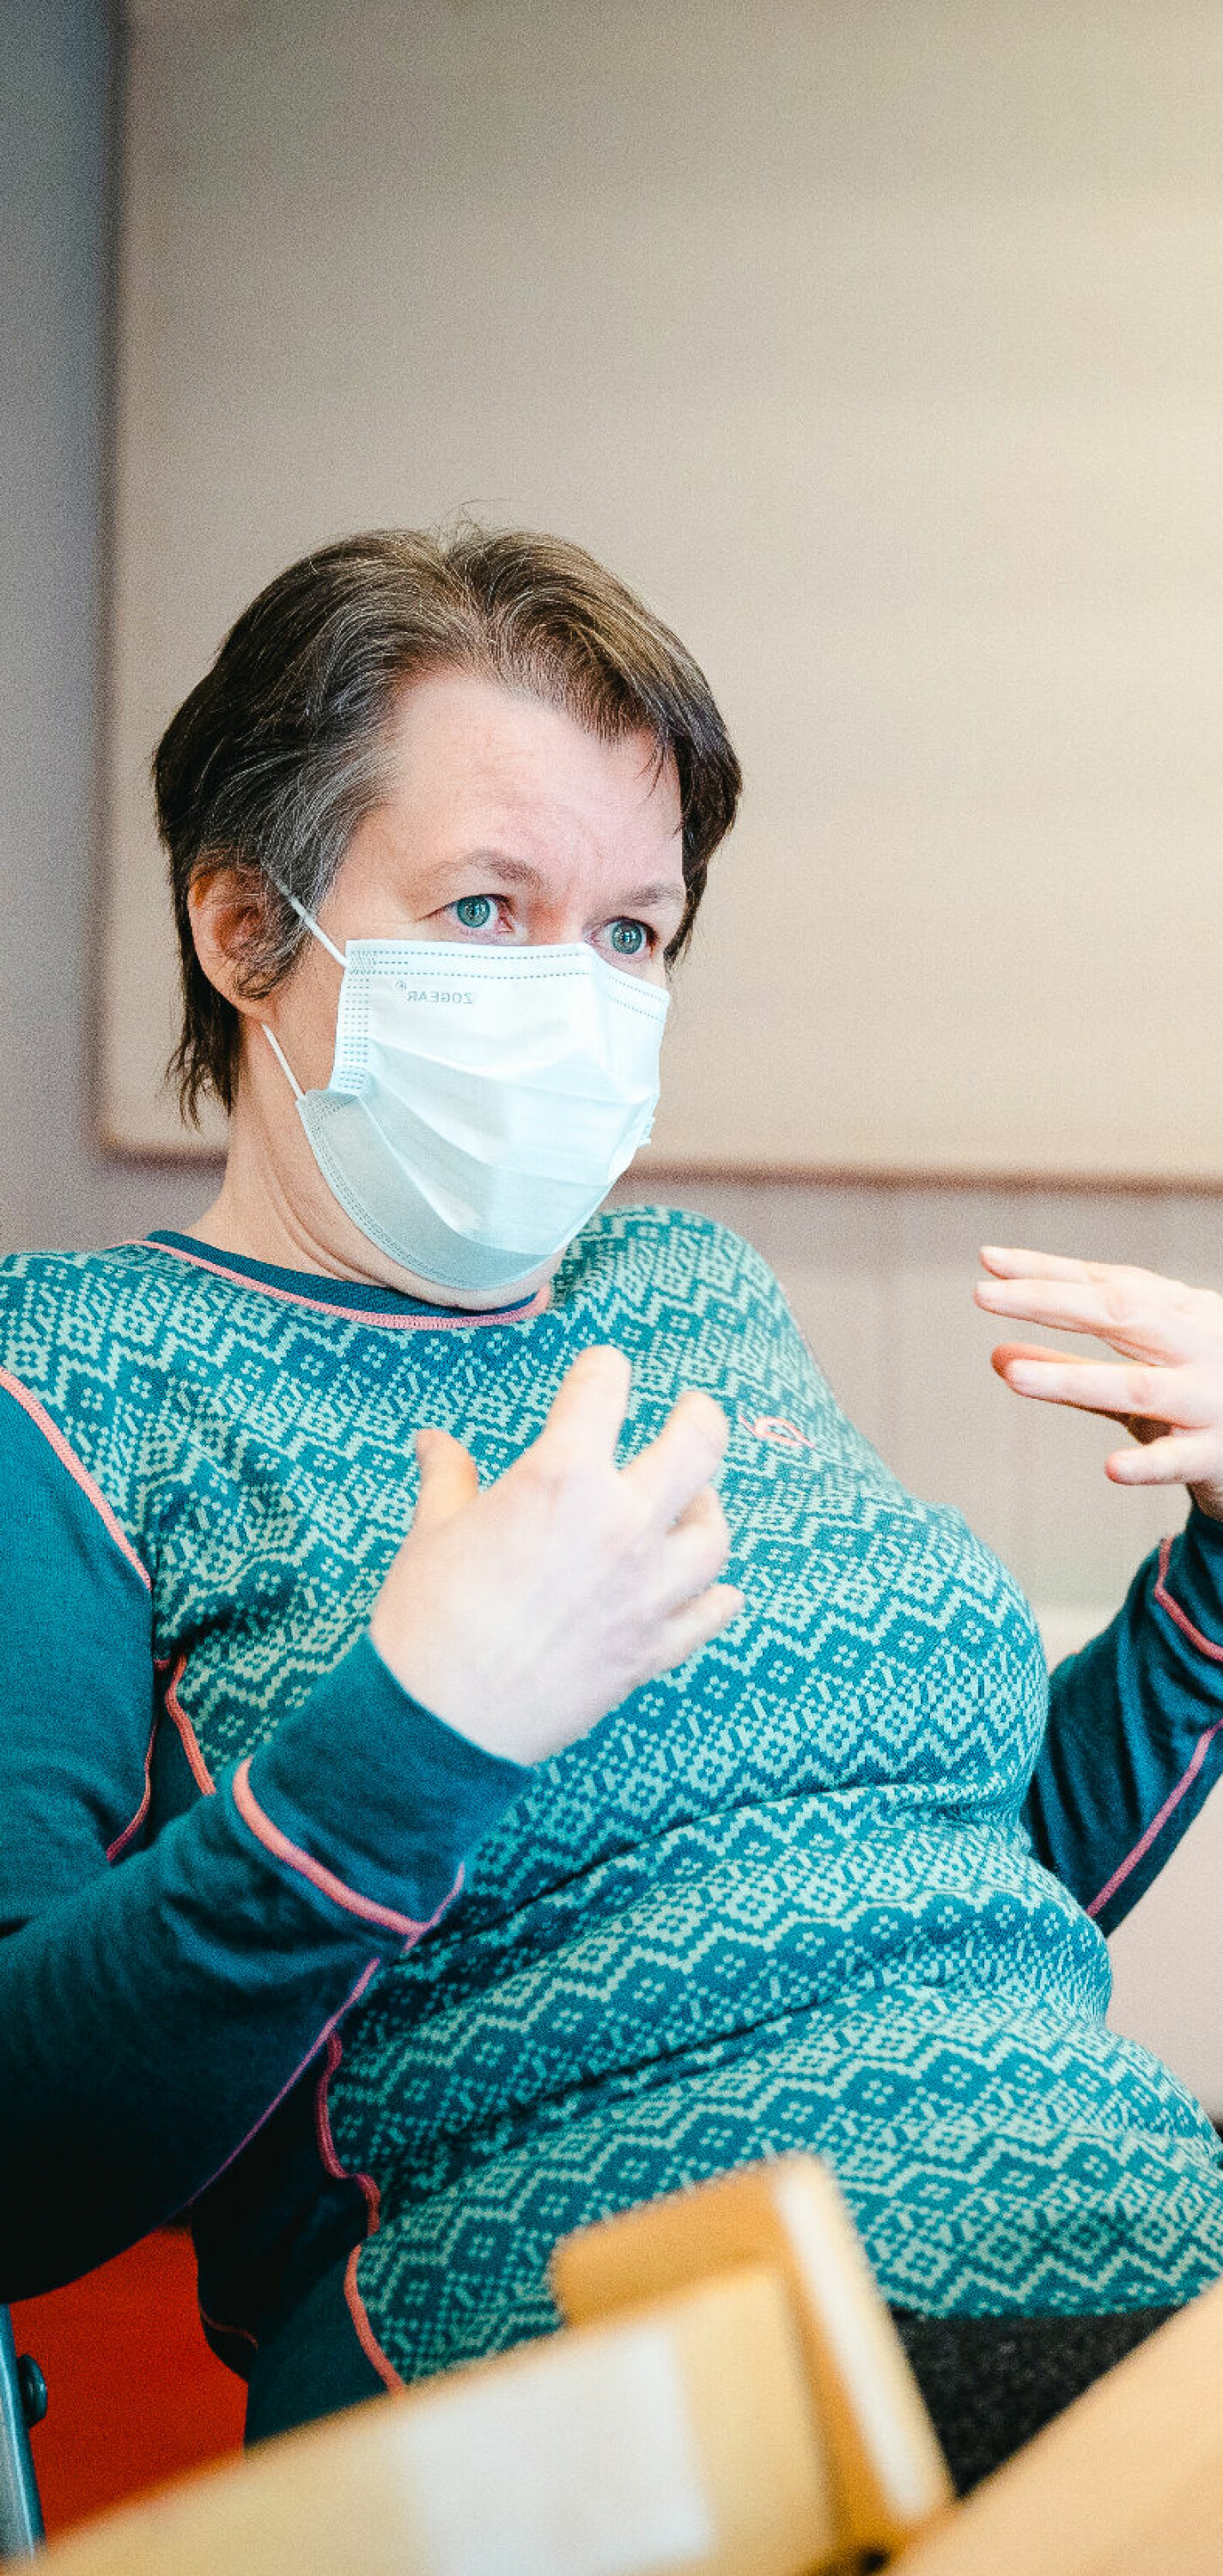 Oslo 18. januar 2022. Kurland barnehage på Furuset i Oslo. 3 av 10 ansatte i barnehagen har fått long-covid. To av dem er Kelly Hunter (54) og Marianne Falla (42).FOTO: JOAKIM S. ENGER